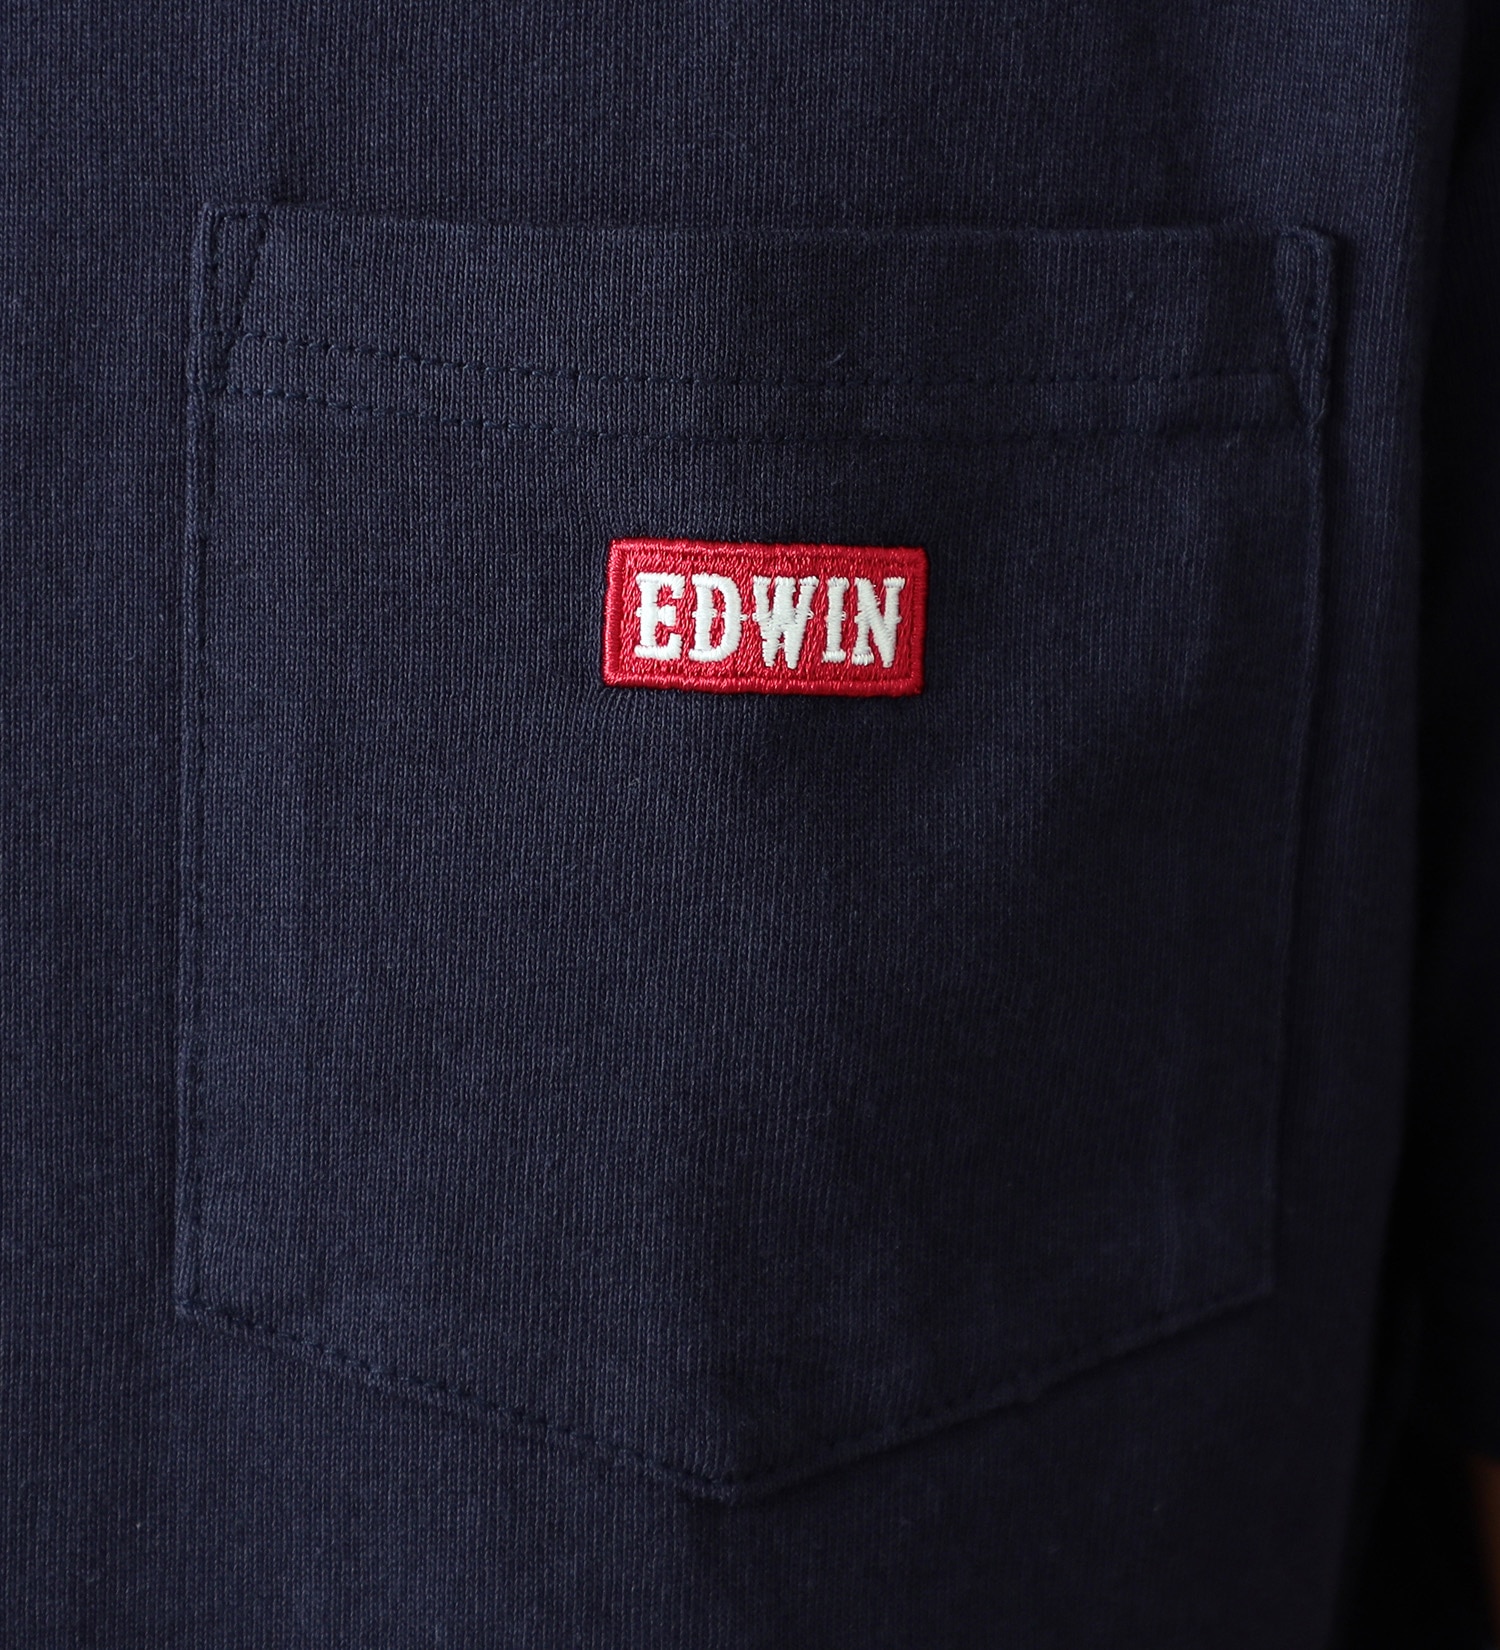 EDWIN(エドウイン)のポケットボックスロゴ半袖Tシャツ【アウトレット店舗・WEB限定】|トップス/Tシャツ/カットソー/メンズ|ネイビー